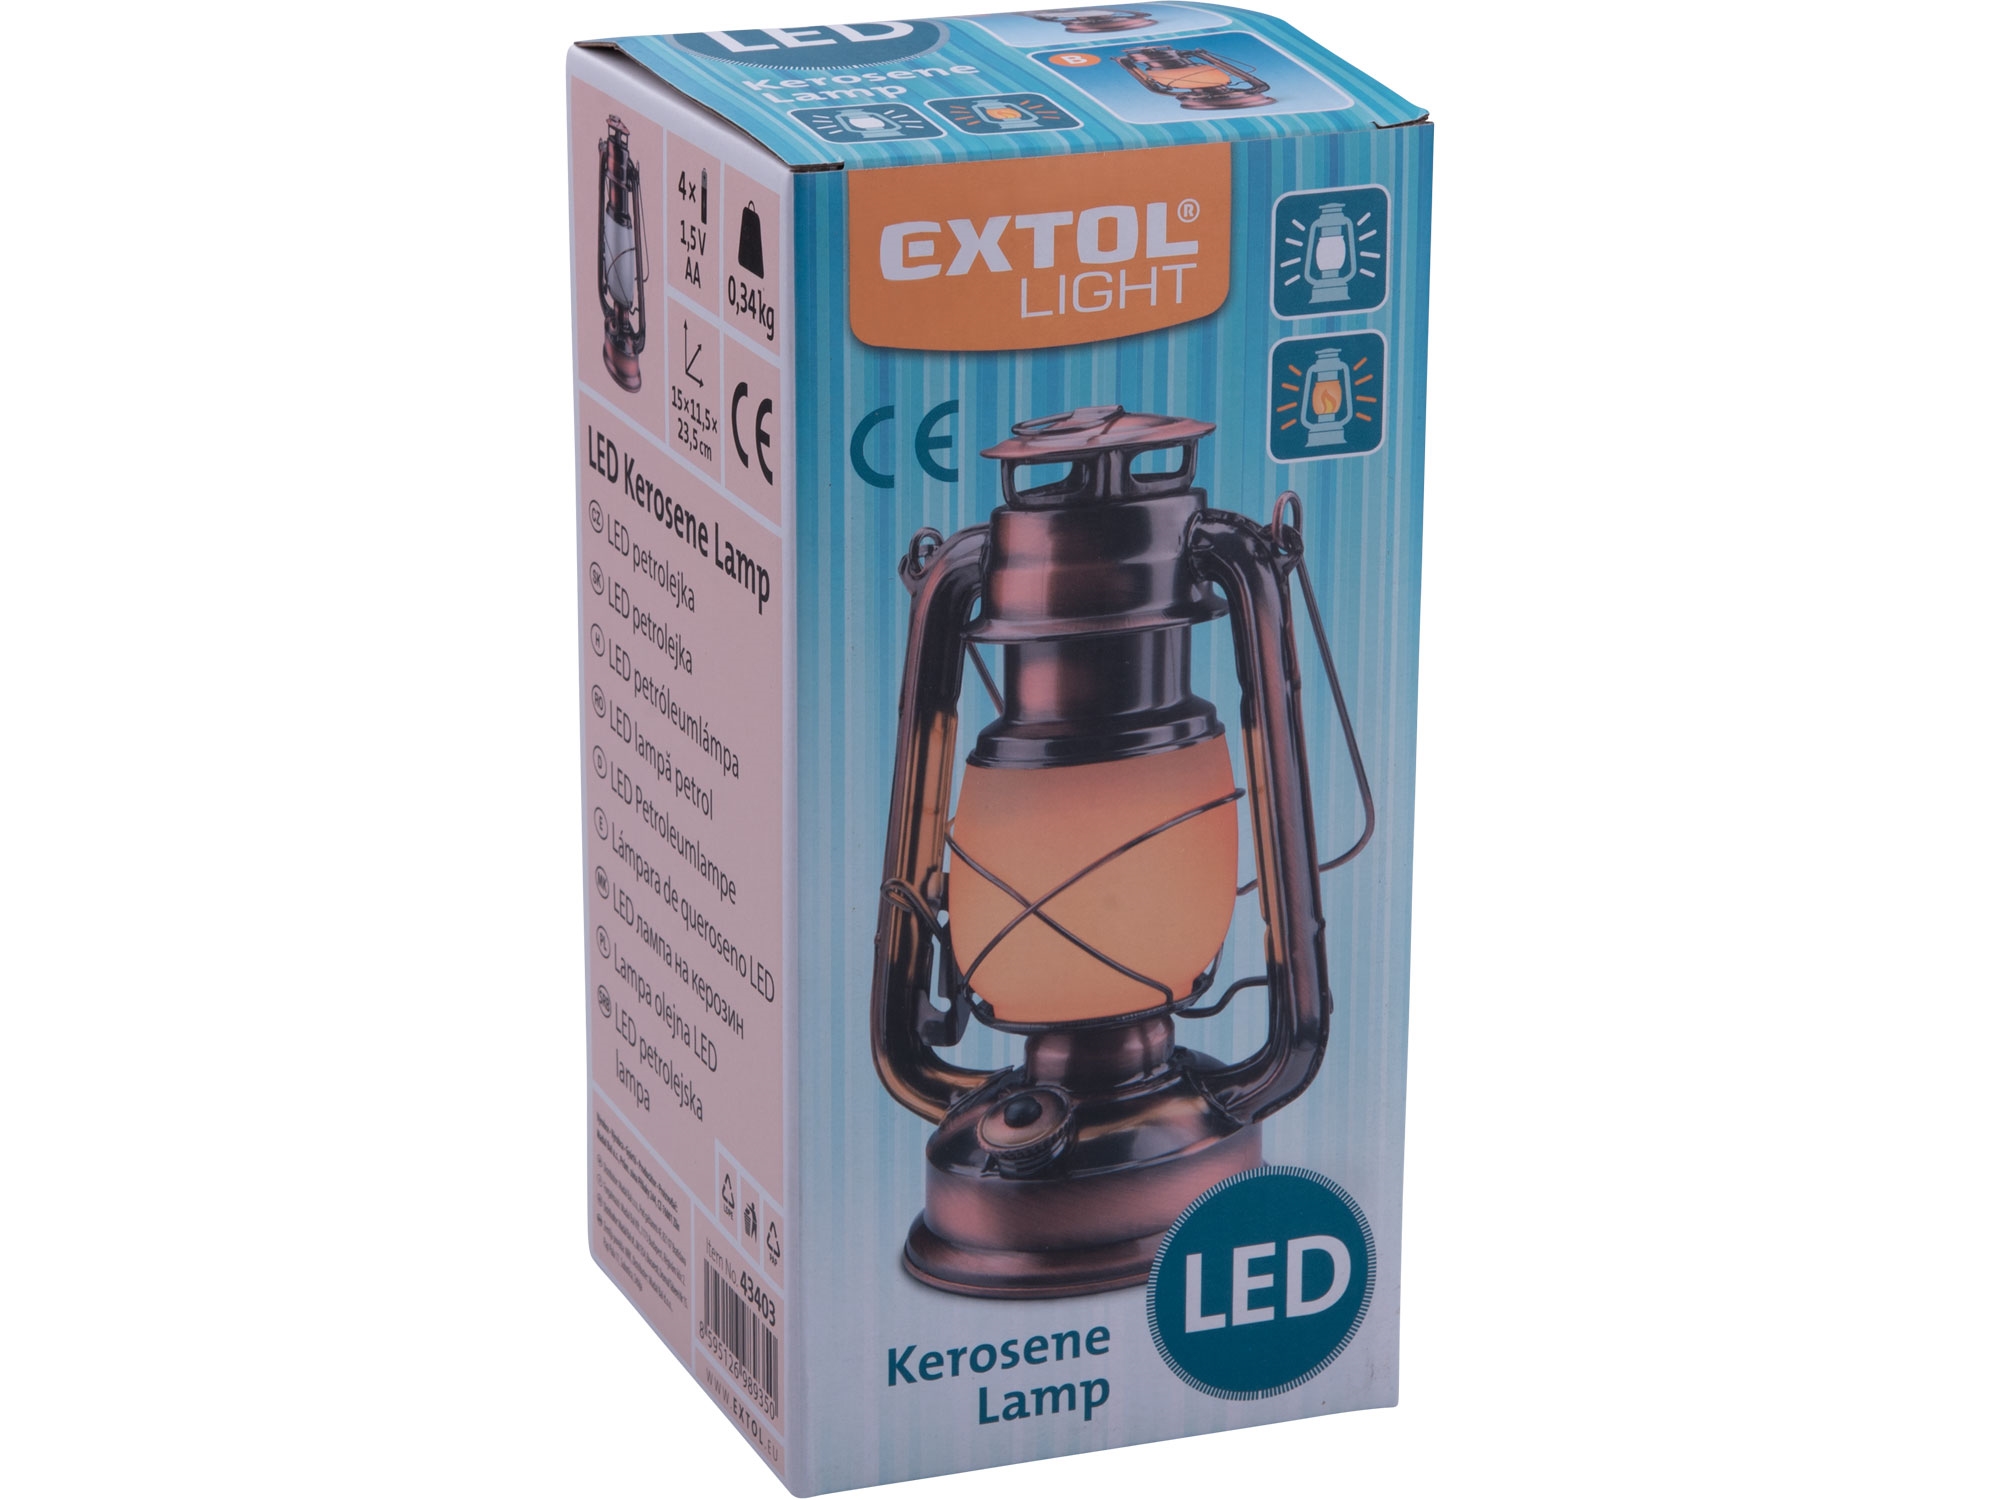 petrolejka LED, bílé světlo/plamen, EXTOL 